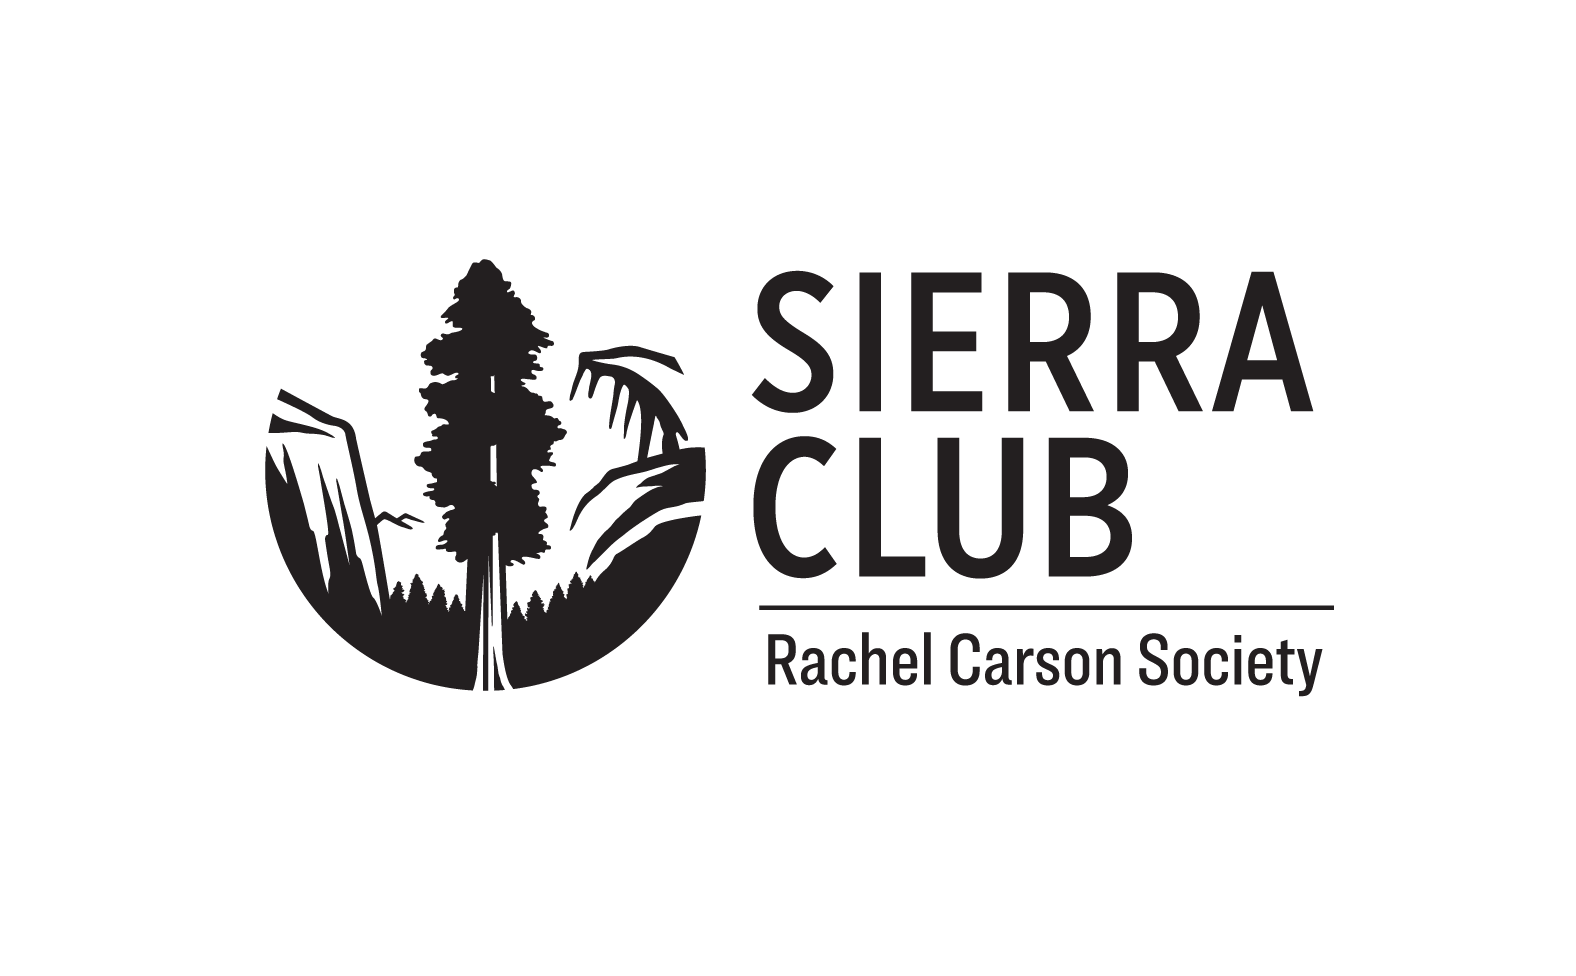 Rachel Carson Society